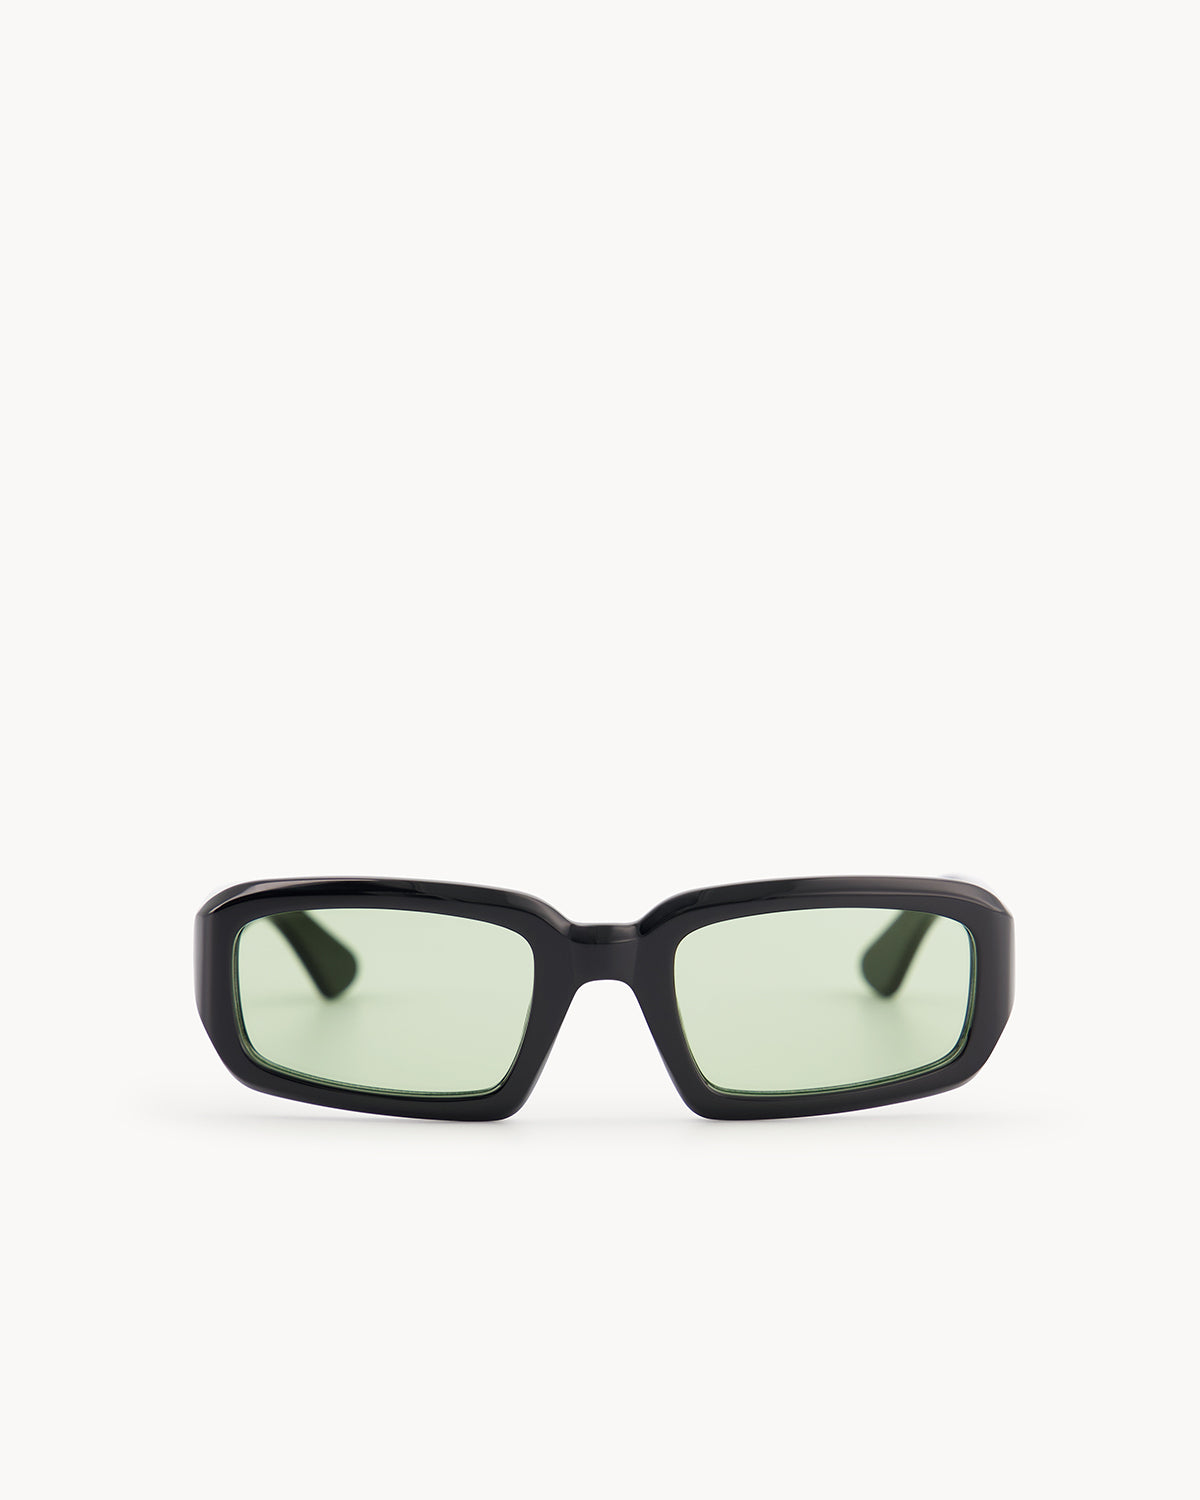 Port Tanger Mektoub Sunglasses in Black Acetate and Mint Lenses 1